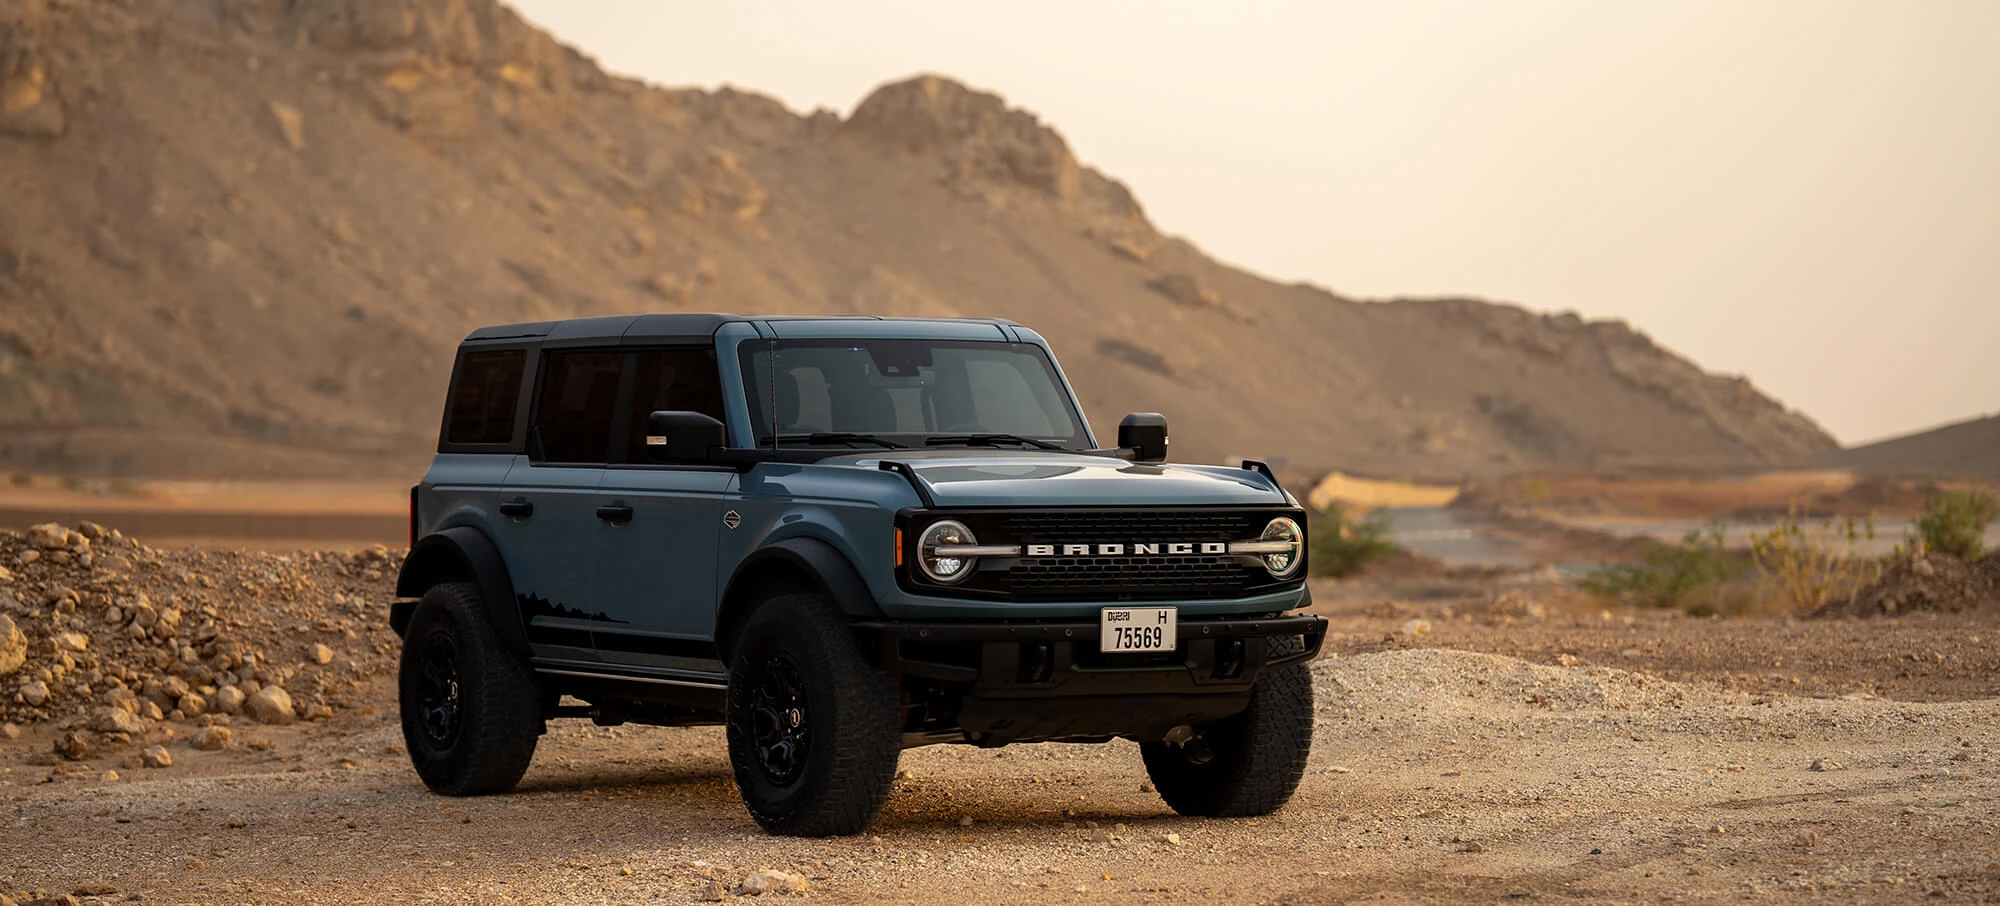 Alquile un Ford Bronco en Dubai